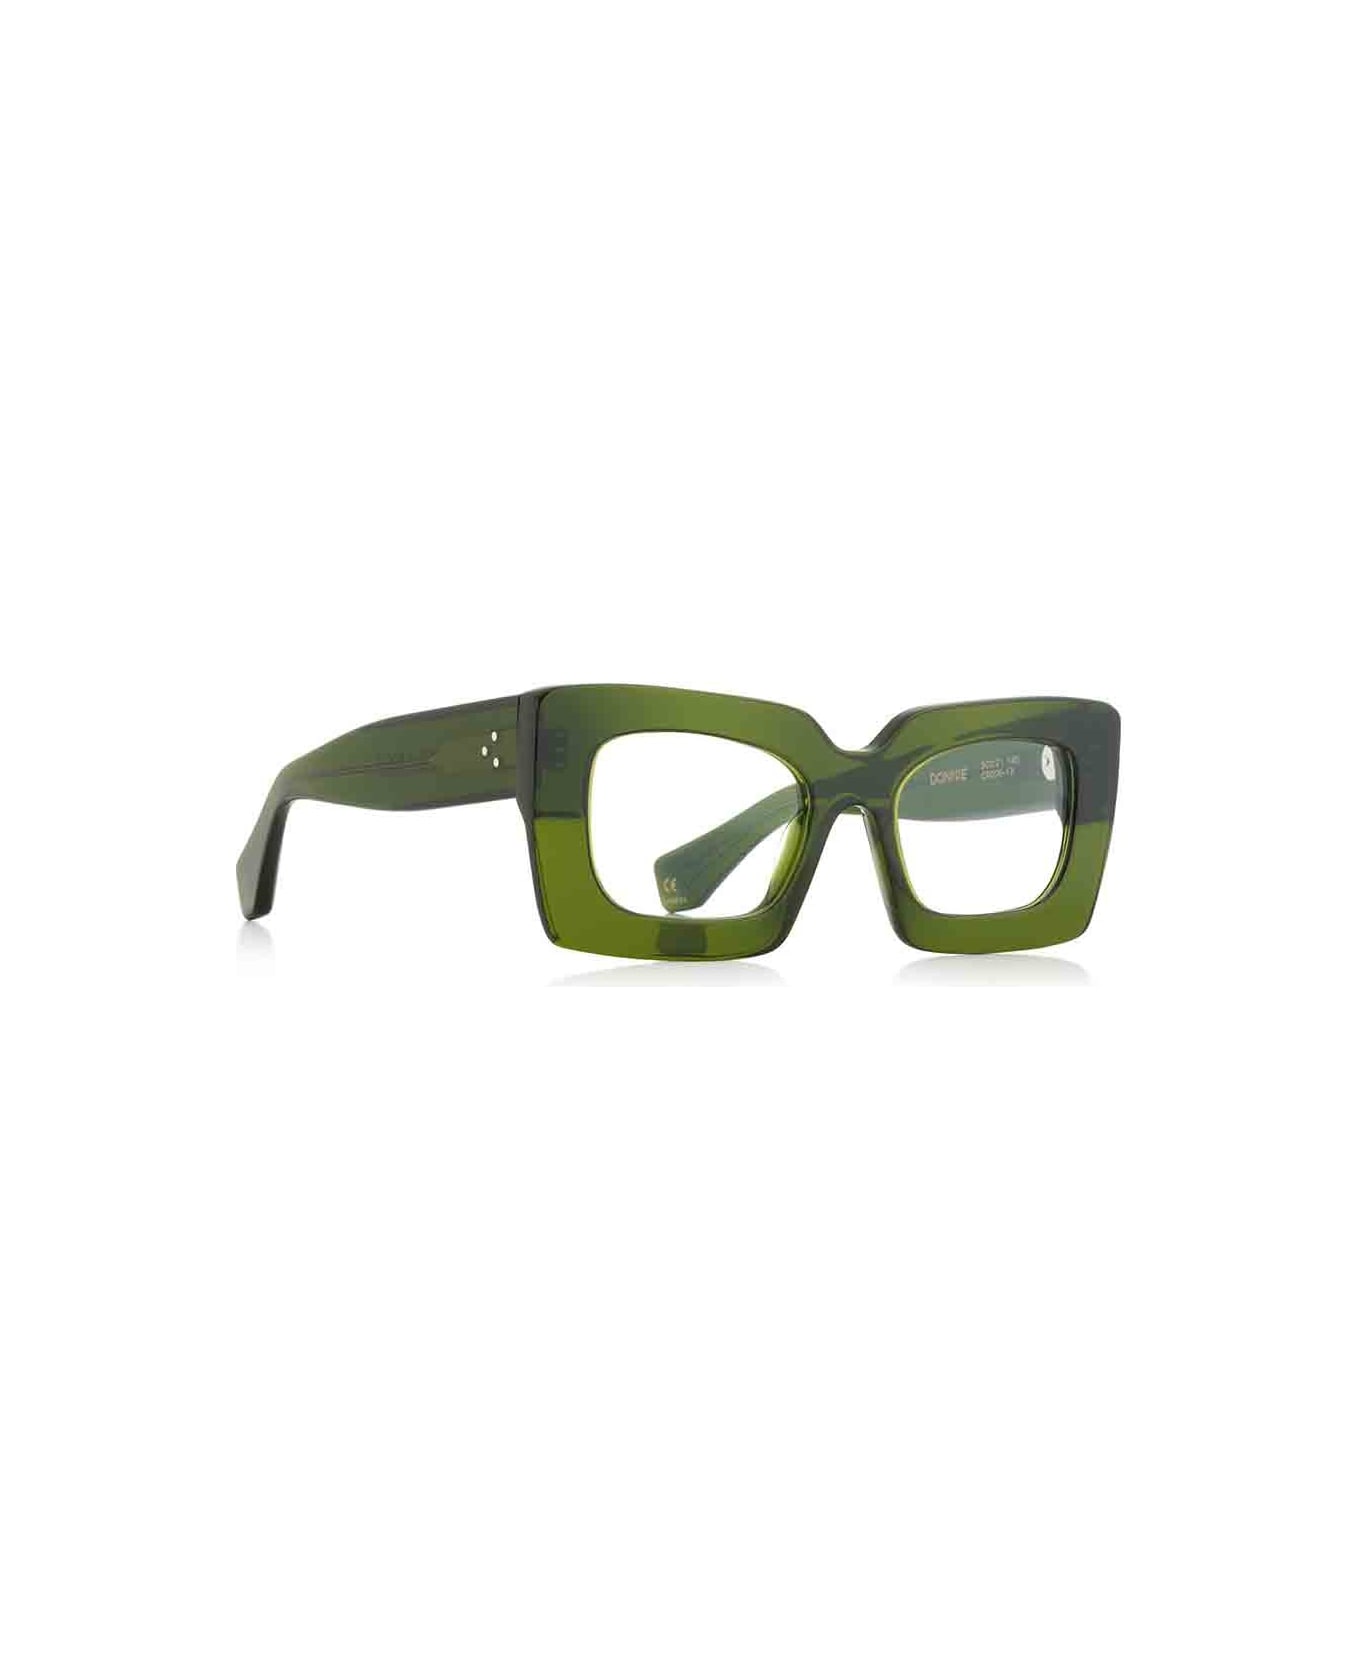 Robert La Roche Eyewear - Verde アイウェア